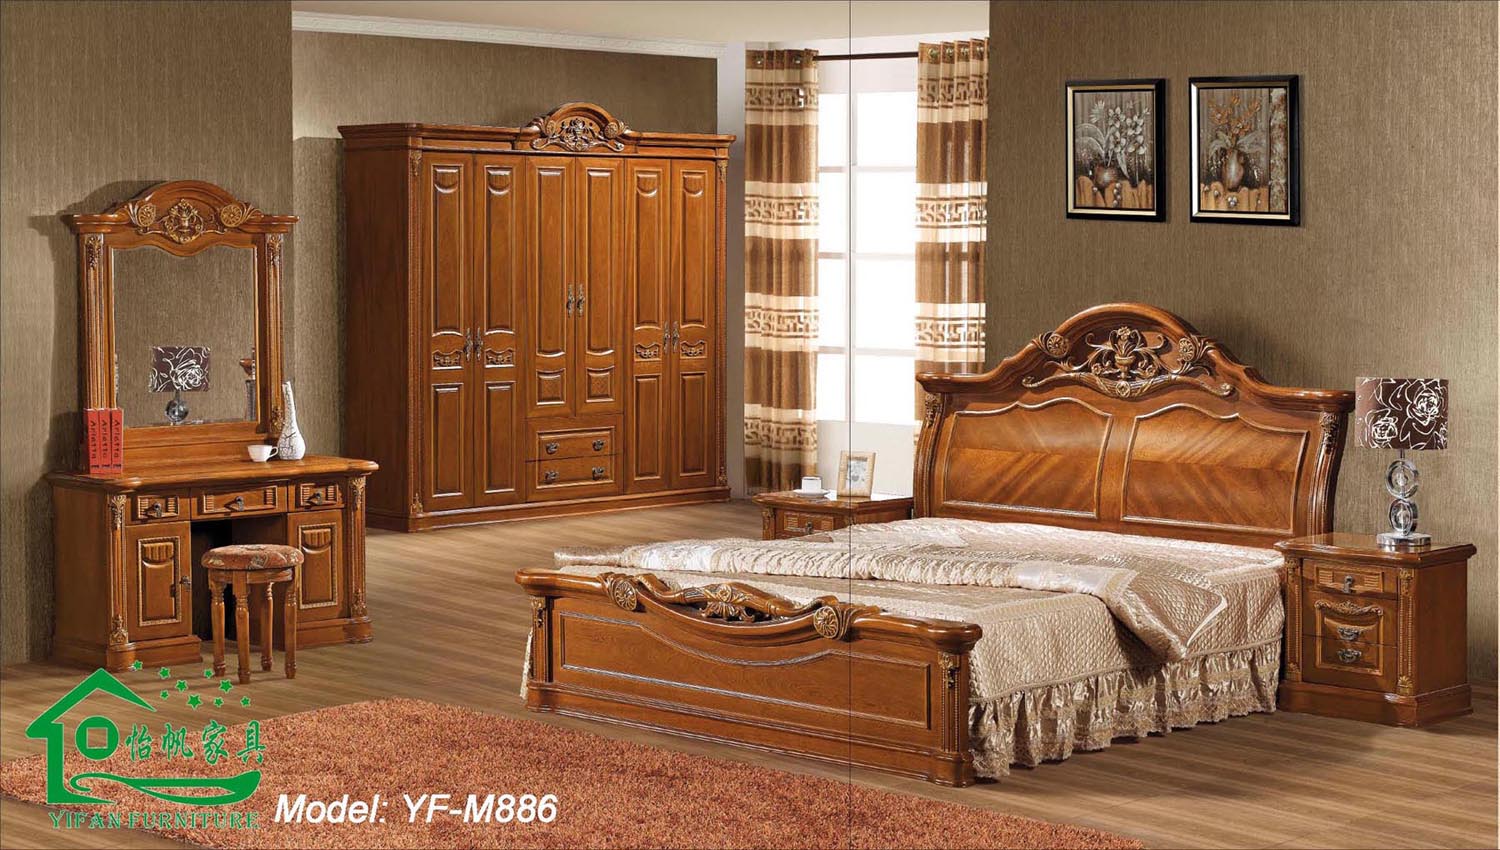 Bedroom  Wooden furniture photo - 3